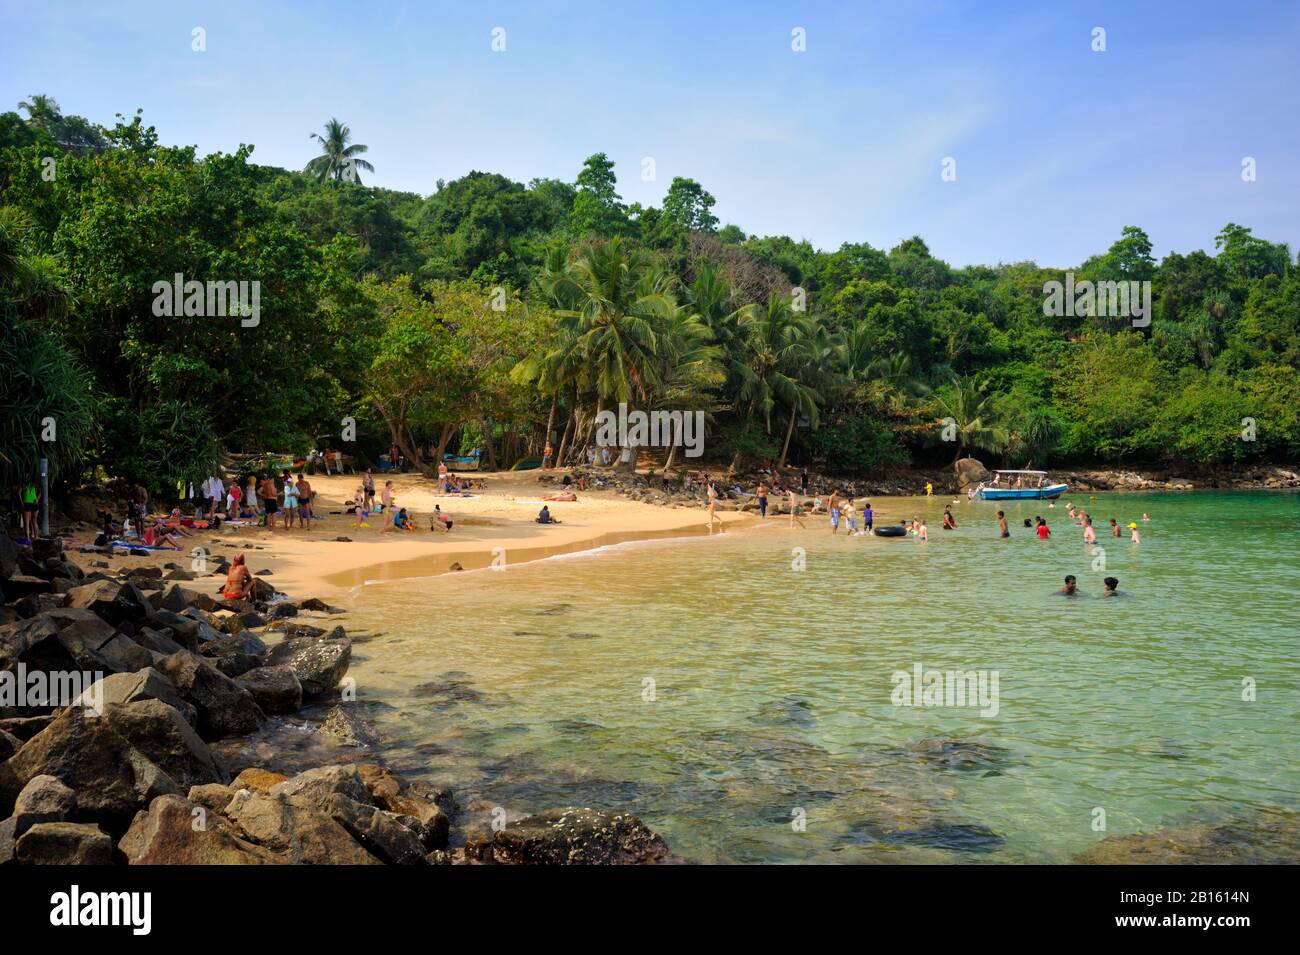 Sri Lanka, Galle, Unawatuna, Jungle beach Stock Photo